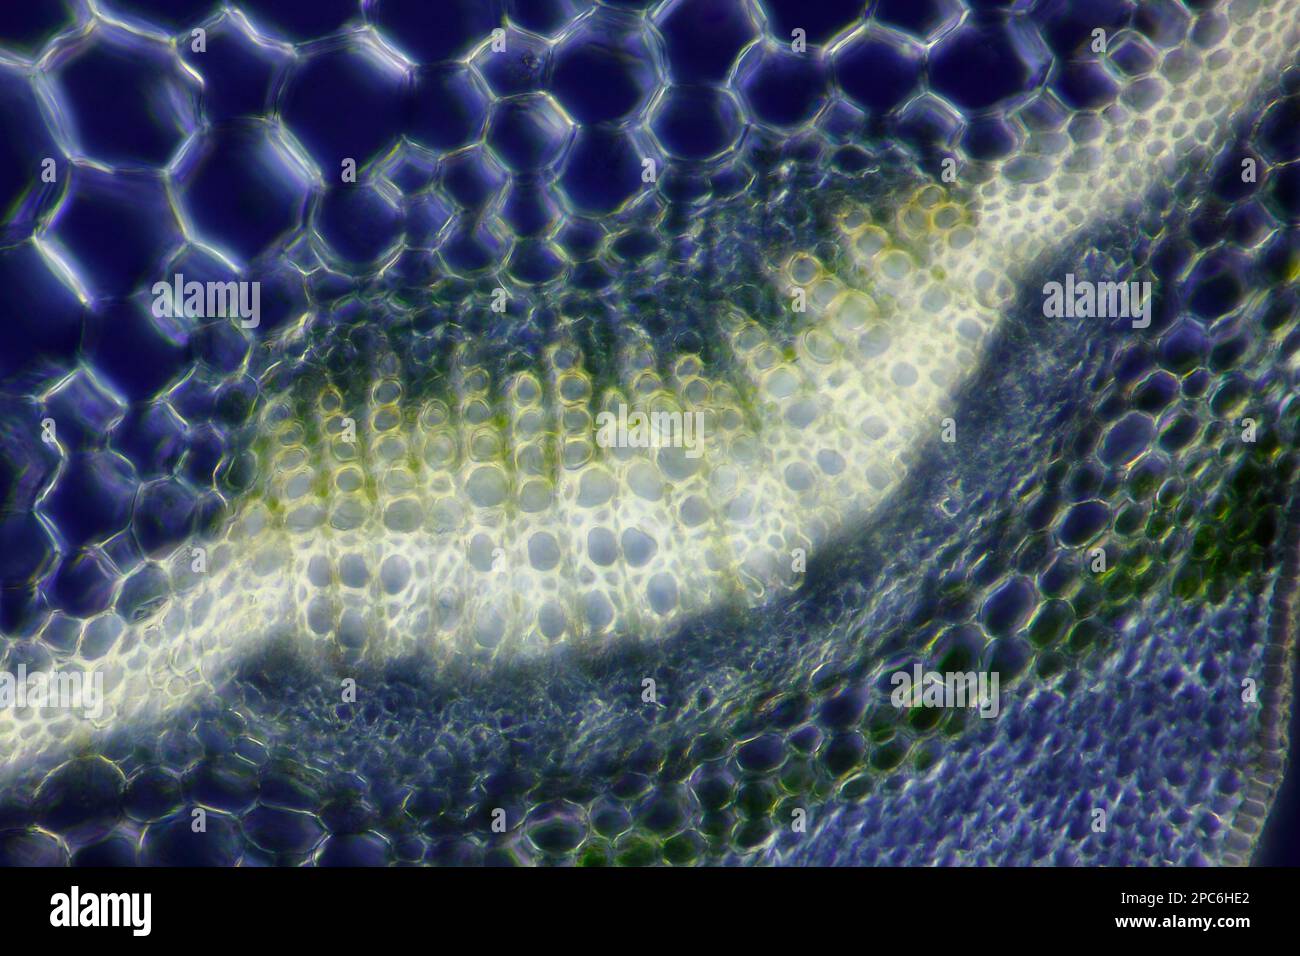 Mikroskopische Ansicht der Spurge (Euphorbia sp.) Gefäßbündel. Polarisiertes Licht mit gekreuzten Polarisatoren. Stockfoto